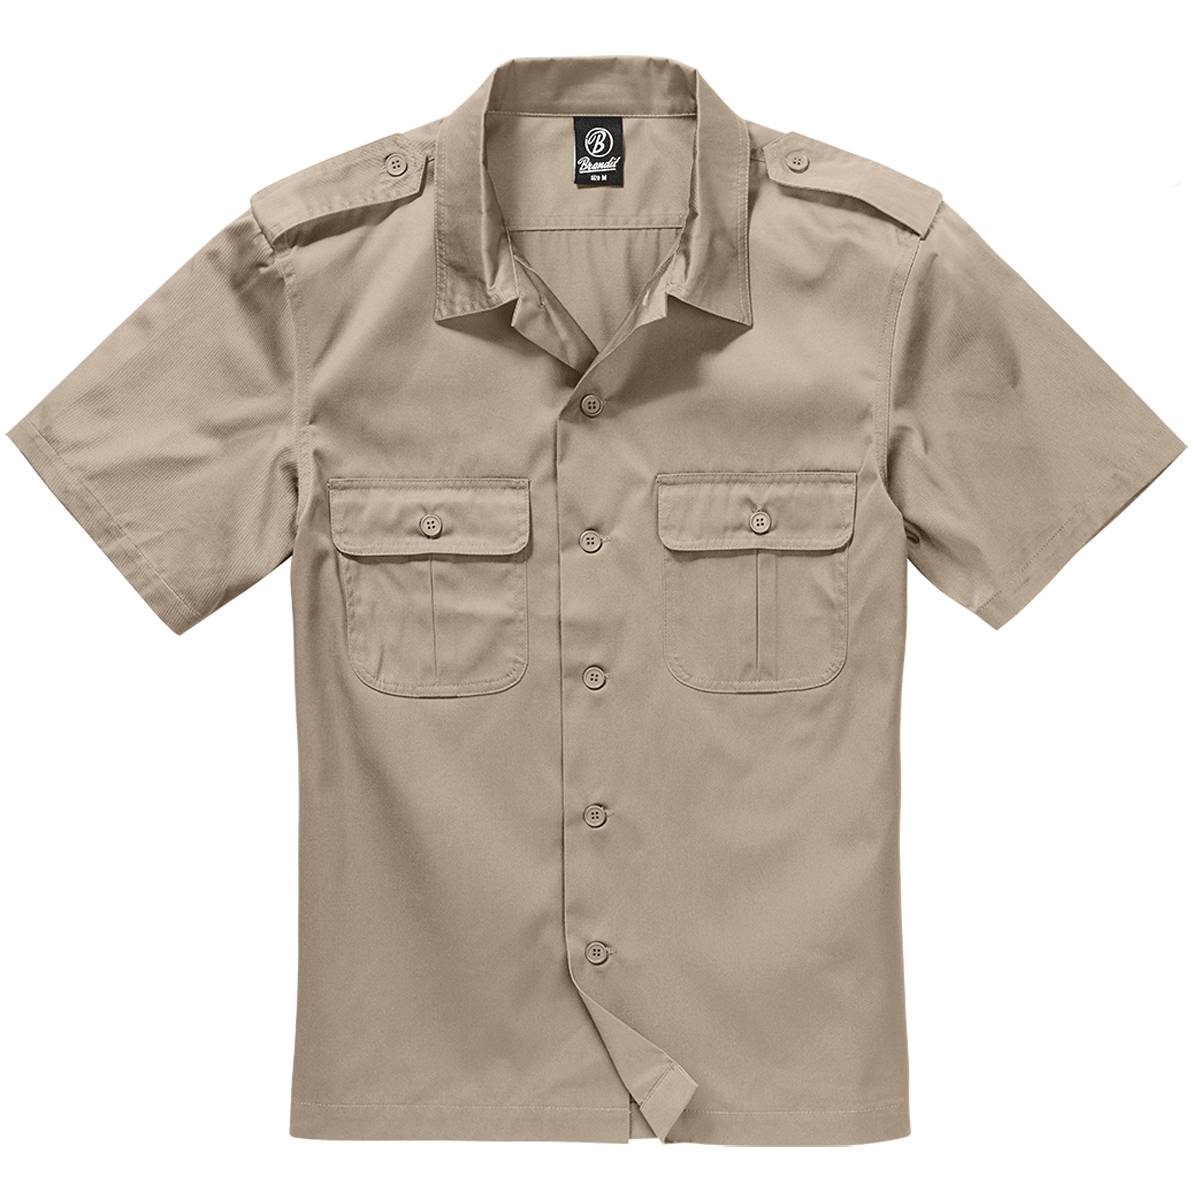 US Army Shirt mit Ärmeltaschen MFH kurzarm div Farben Baumwolle Hemd BW NEU